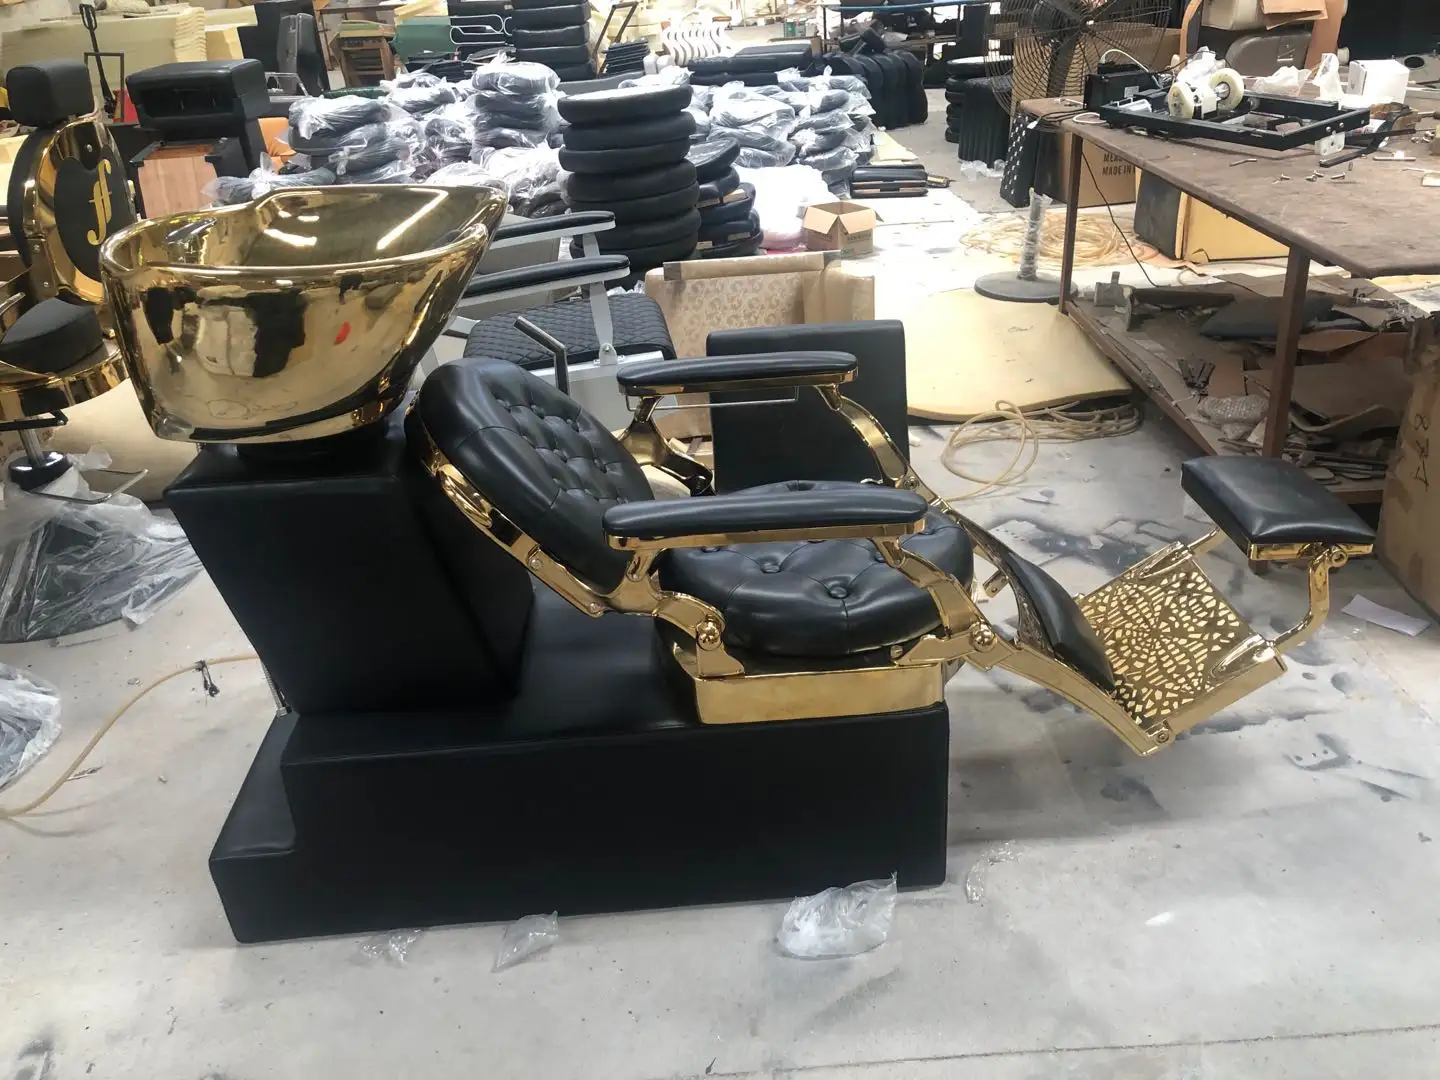 2020 son avrupa tarzı alüminyum alaşımlı ağır hizmet altın ve siyah berber sandalyeleri stil sandalyeler Salon sandalyesi Logo ile